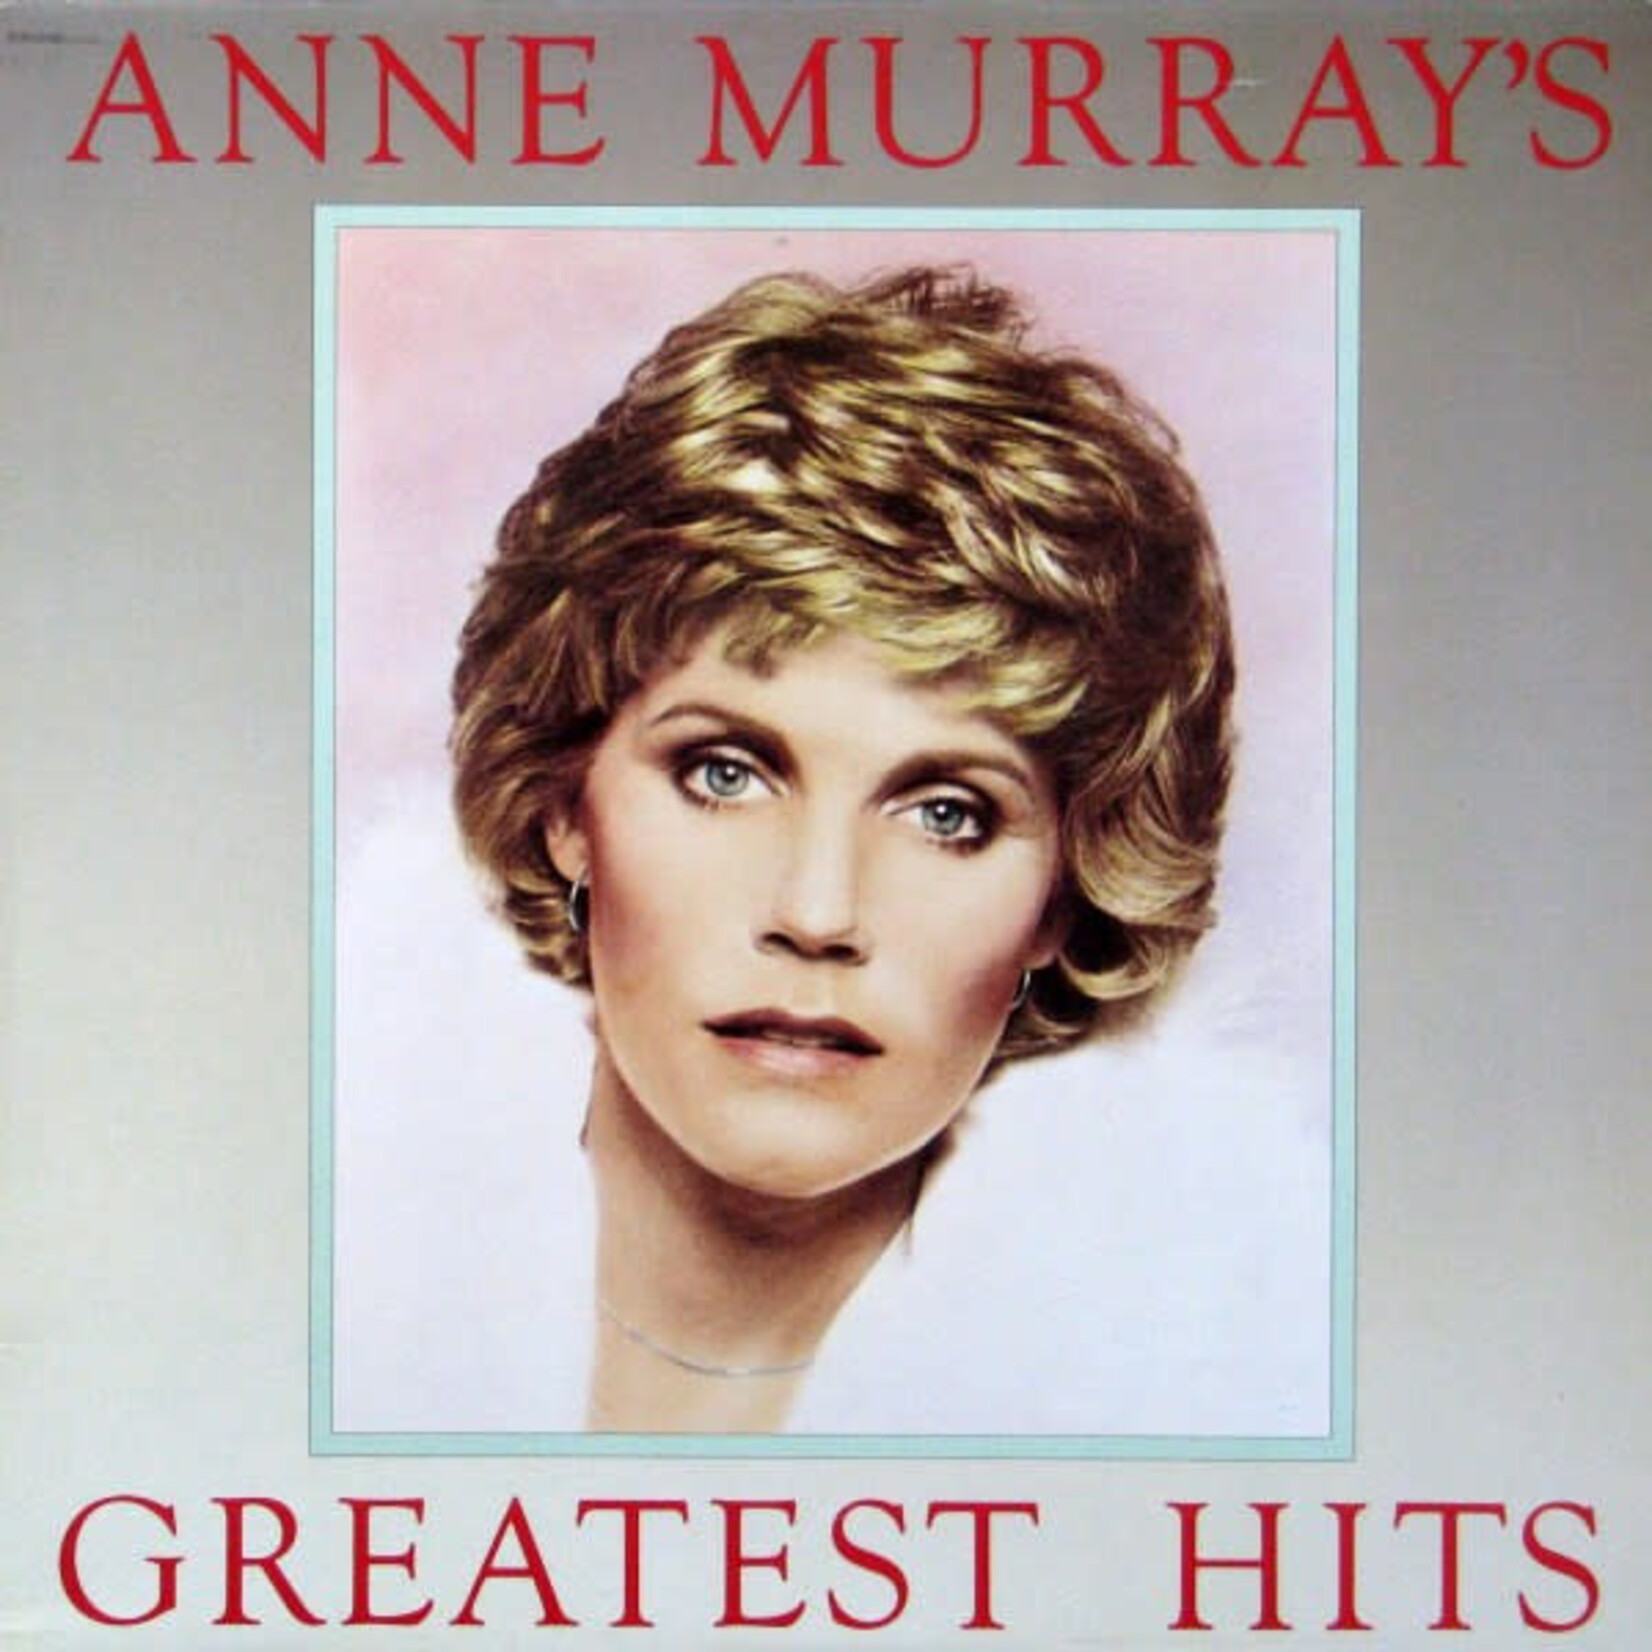 Anne Murray Anne Murray – Anne Murray's Greatest Hits (VG, 1980, LP, Capitol Records – SOO-12110) SCAZ